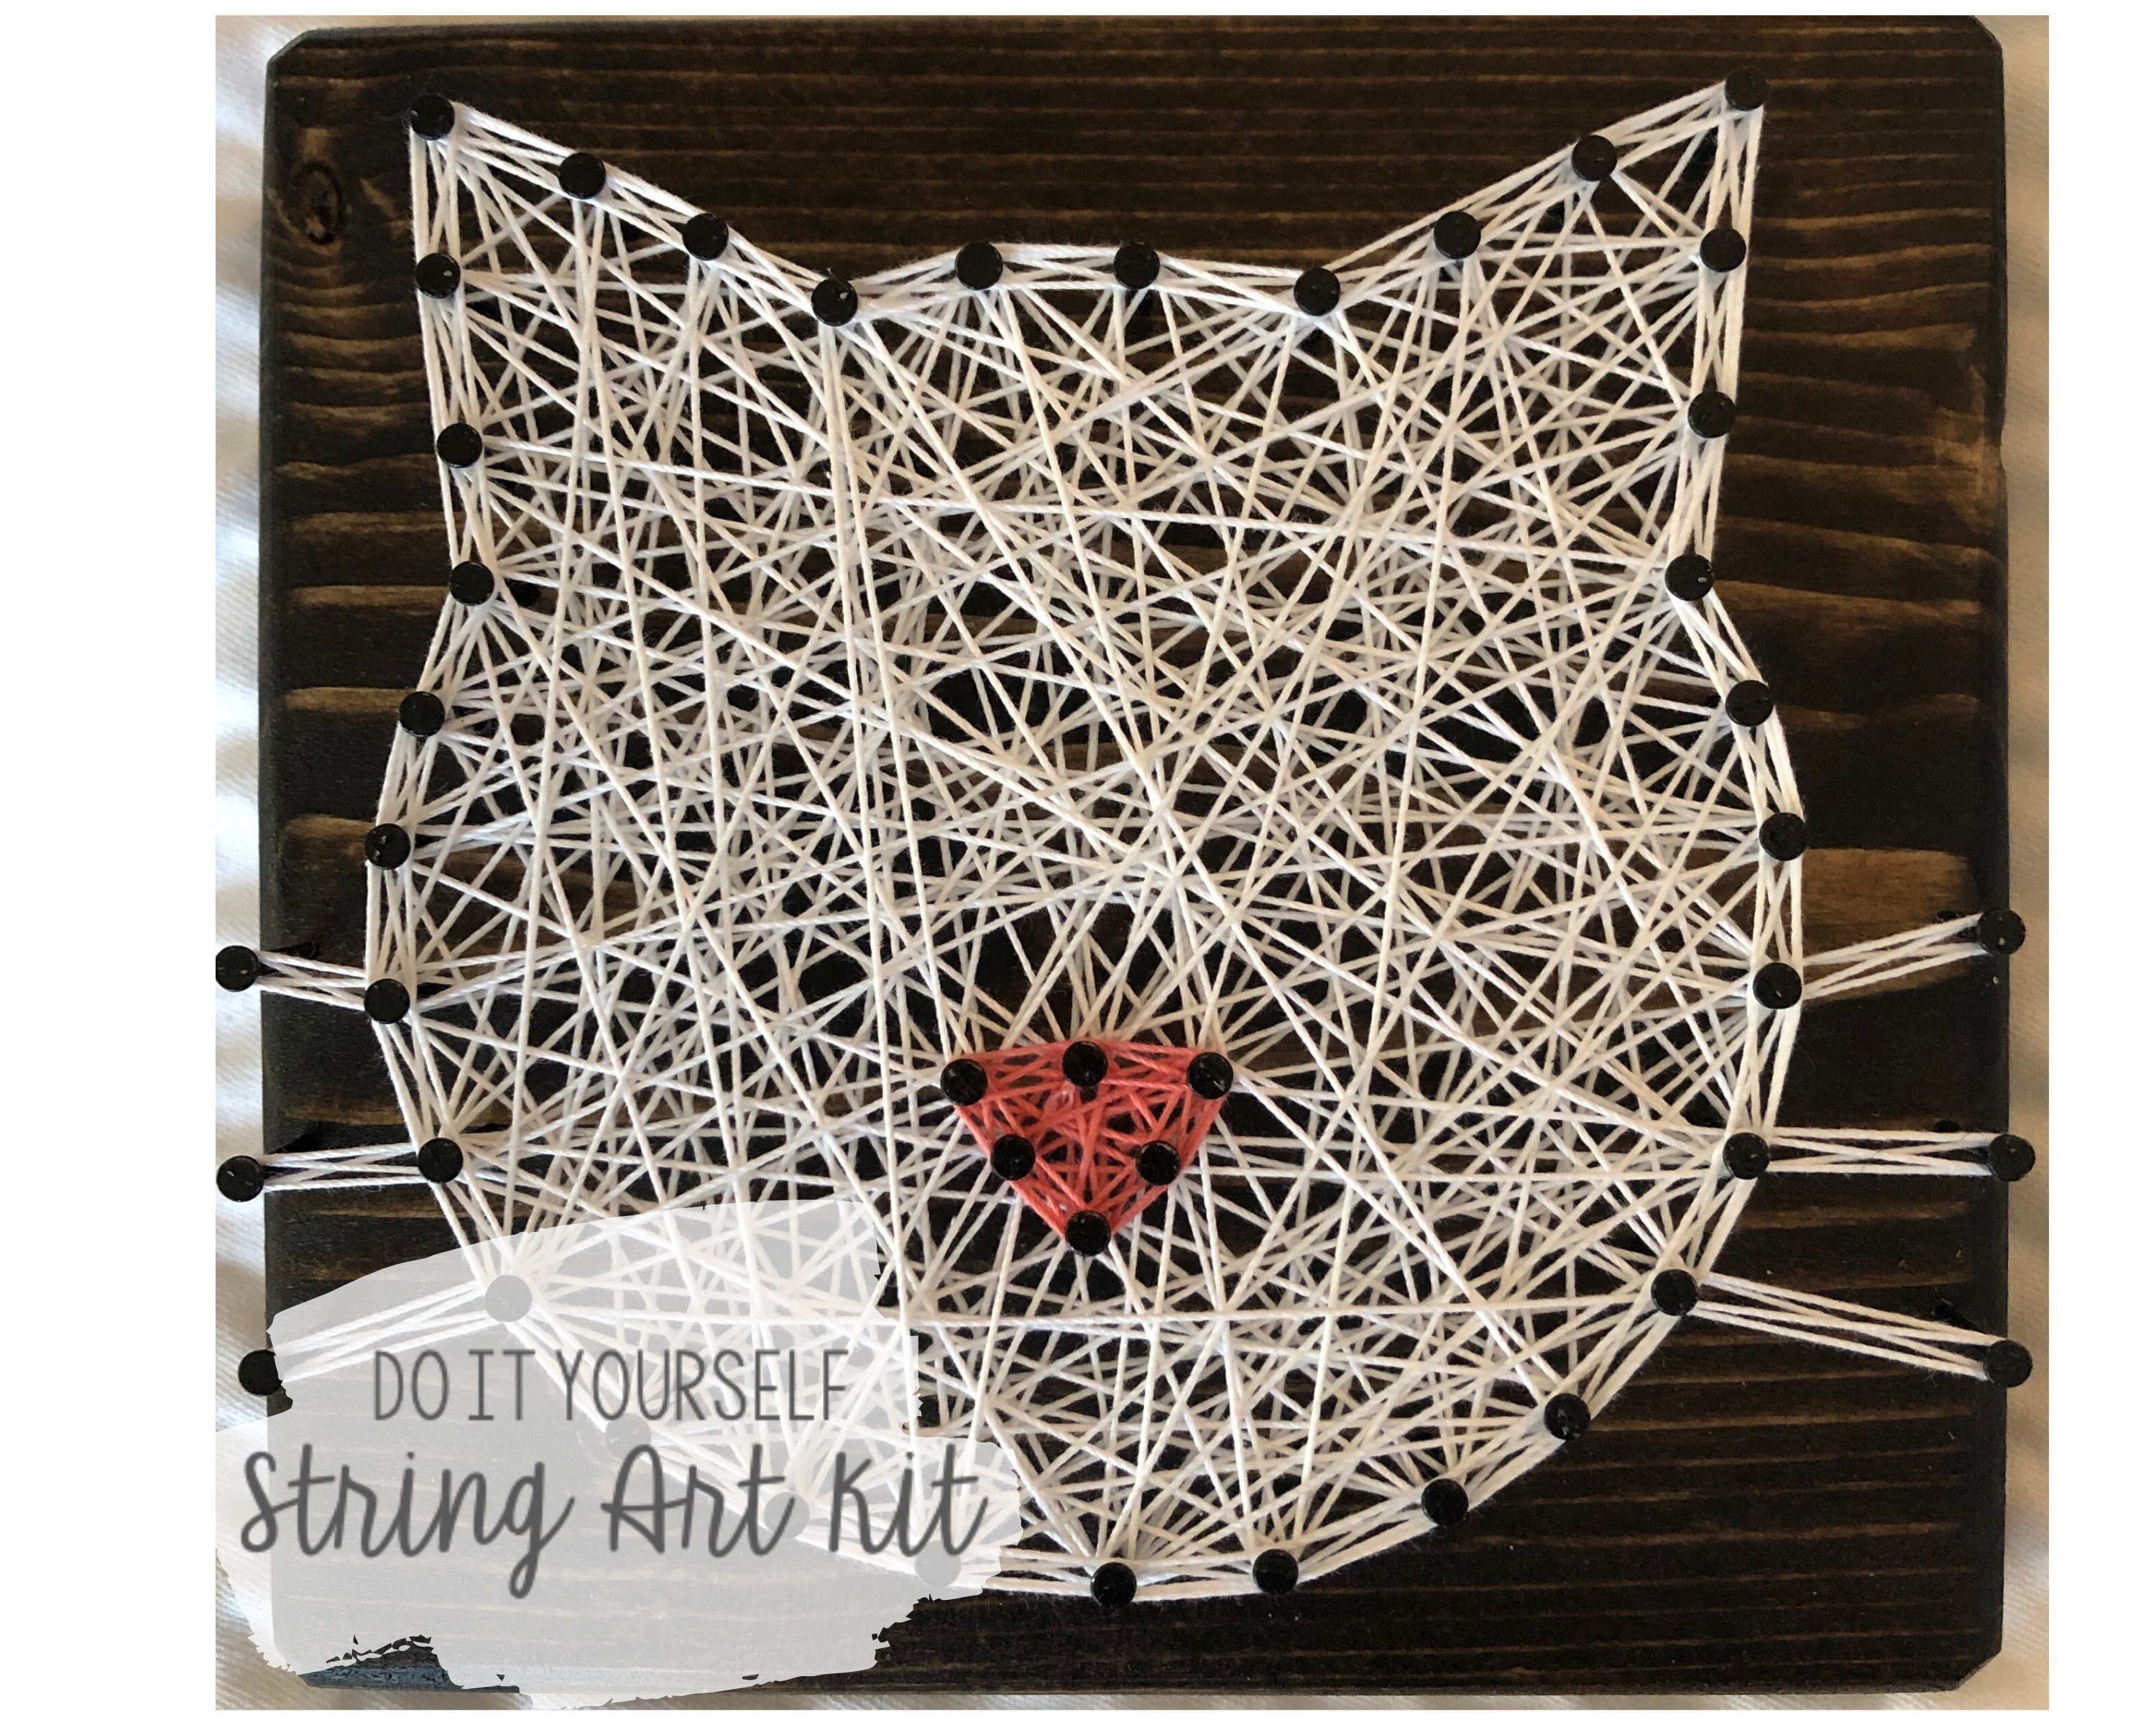 3d String Art Kit, String Art Kit For Kids 9-12 Girls, Heart